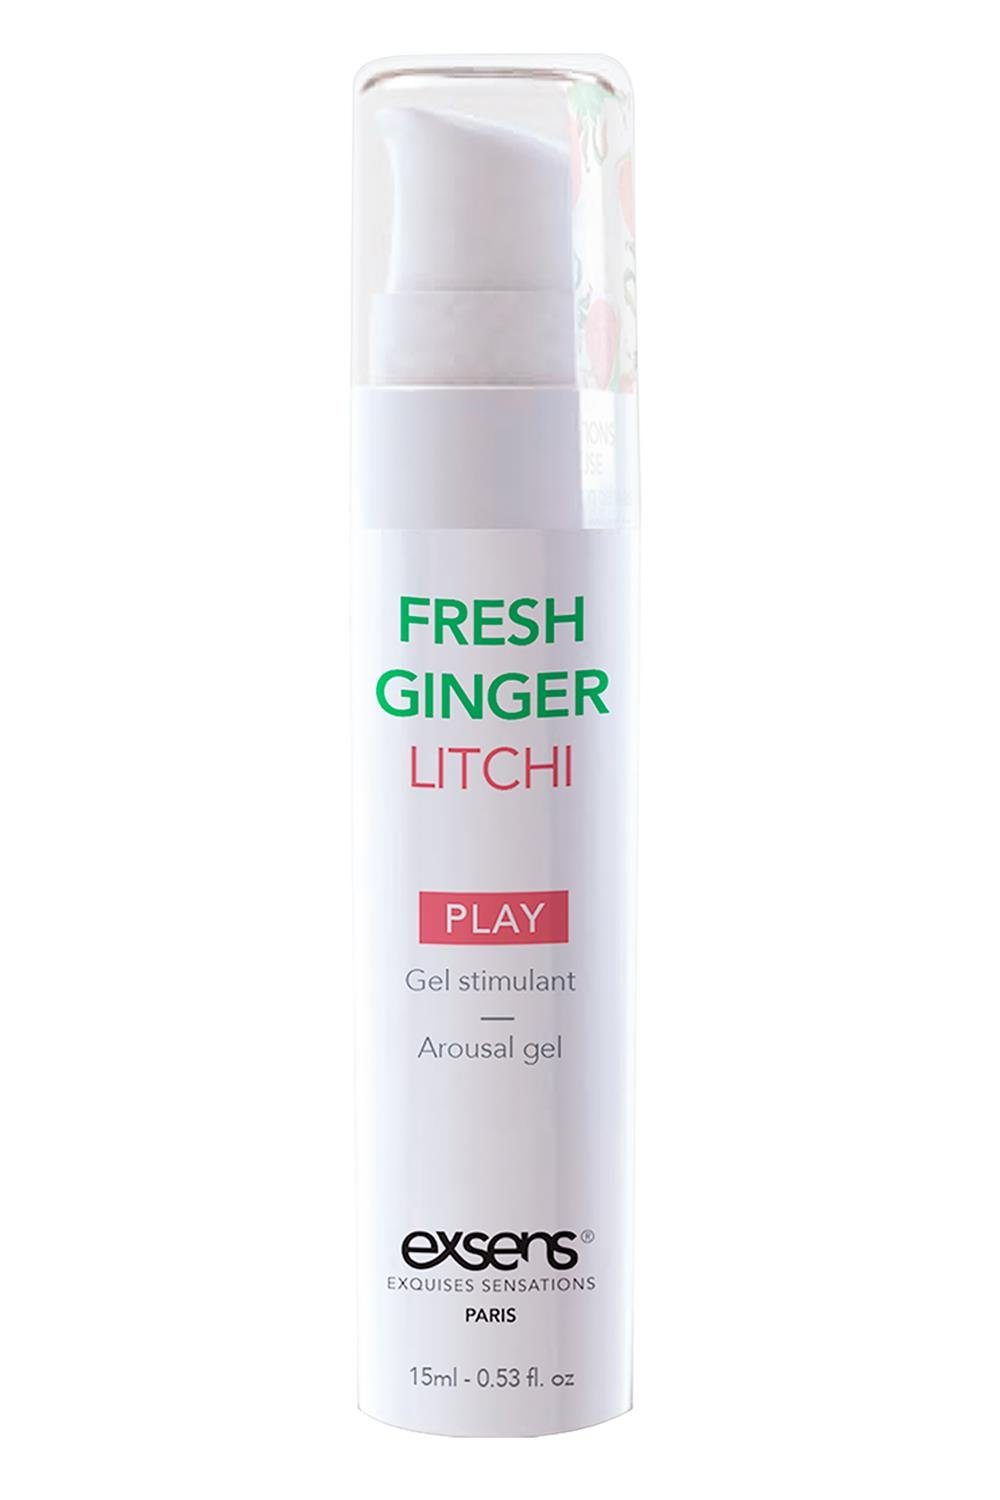 Exsens Gleit- und Massagegel Exsens Arousal Gel Fresh Ginger Litchi 15ml, Sanfte, sichere und wirksame Formel